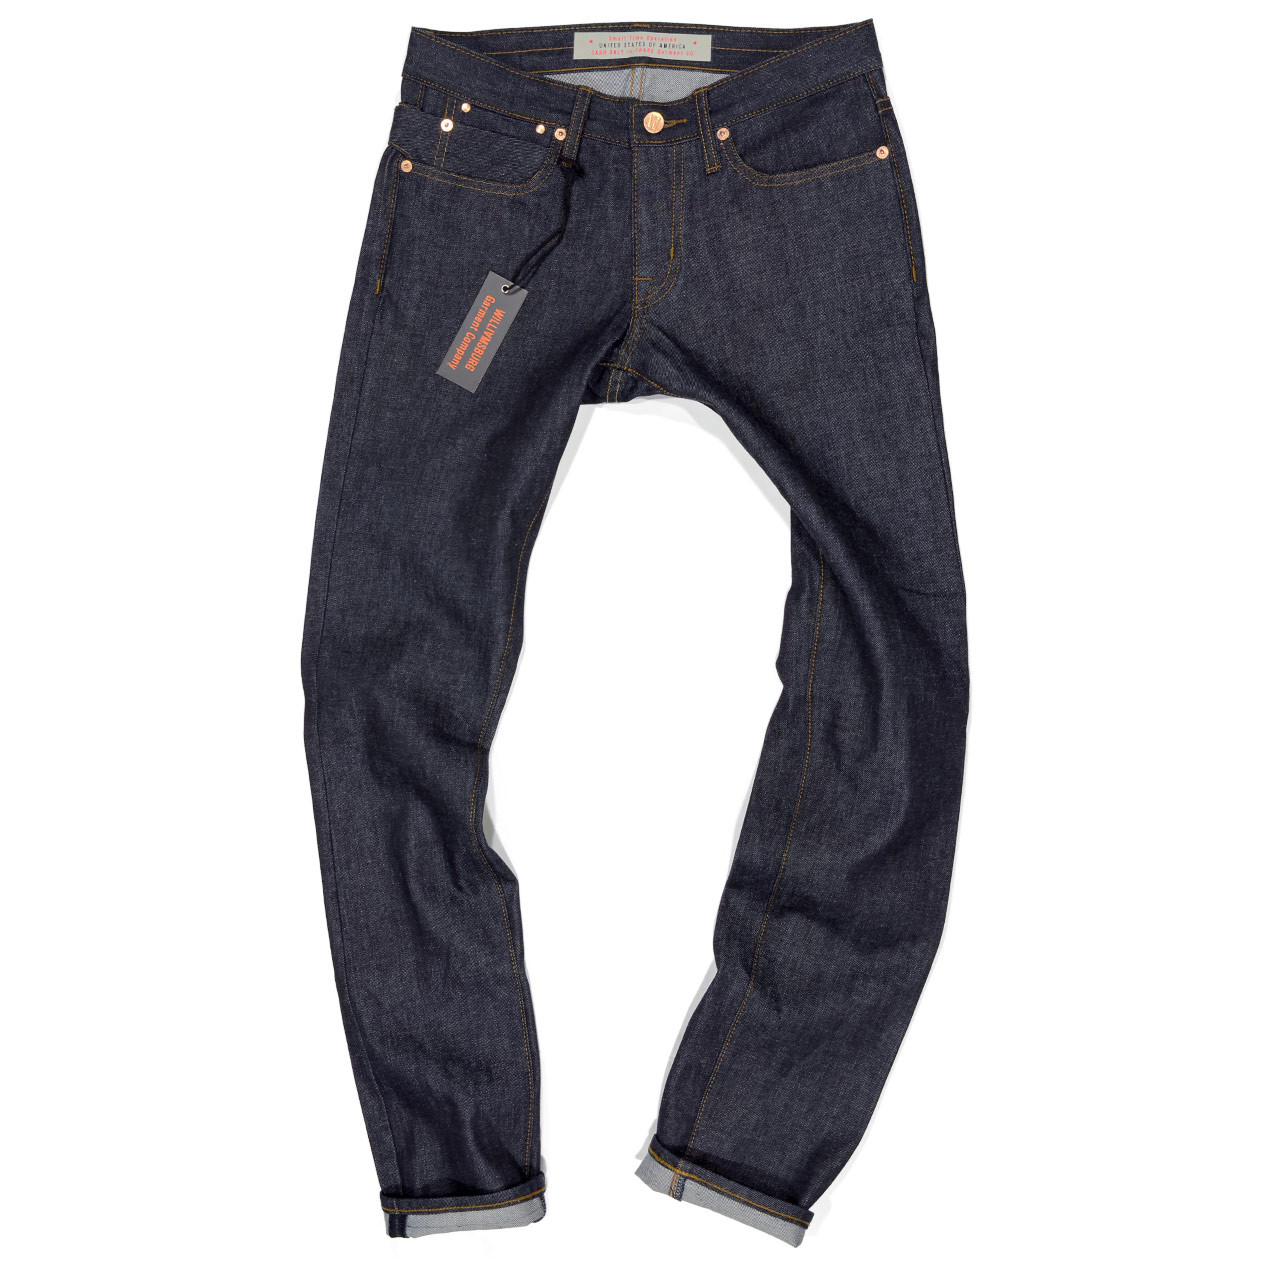 Faded Brown Men Denim Jeans, Slim Fit at Rs 575/piece in Kolkata | ID:  2850266113130